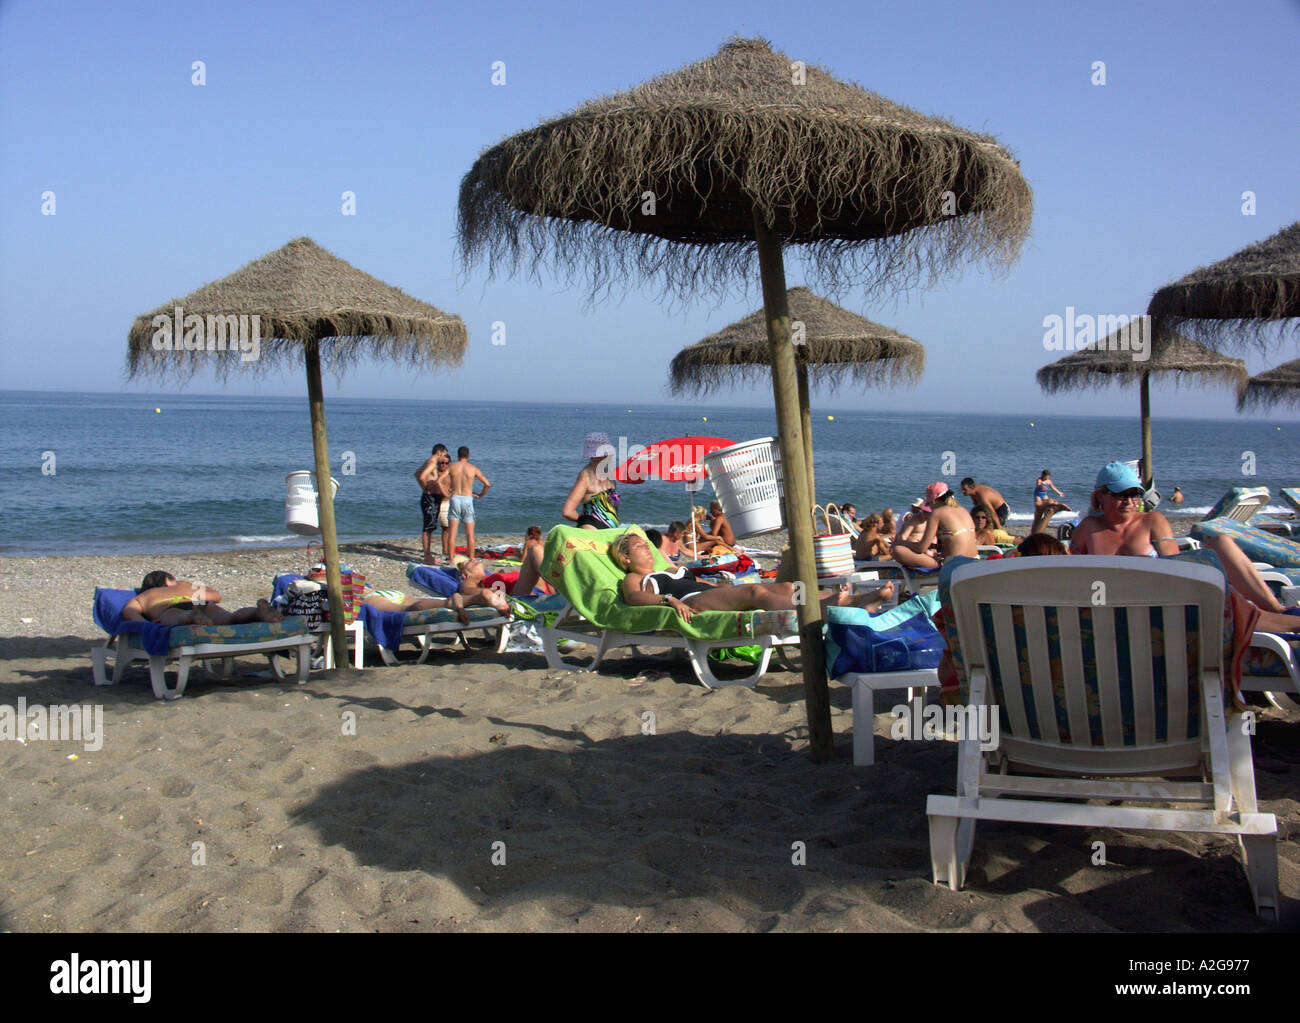 Summer Fun on the Beach Bikini Beach Chiringuito Playa de Castillo, Fuengirola, Costa del Sol, Spain Stock Photo picture